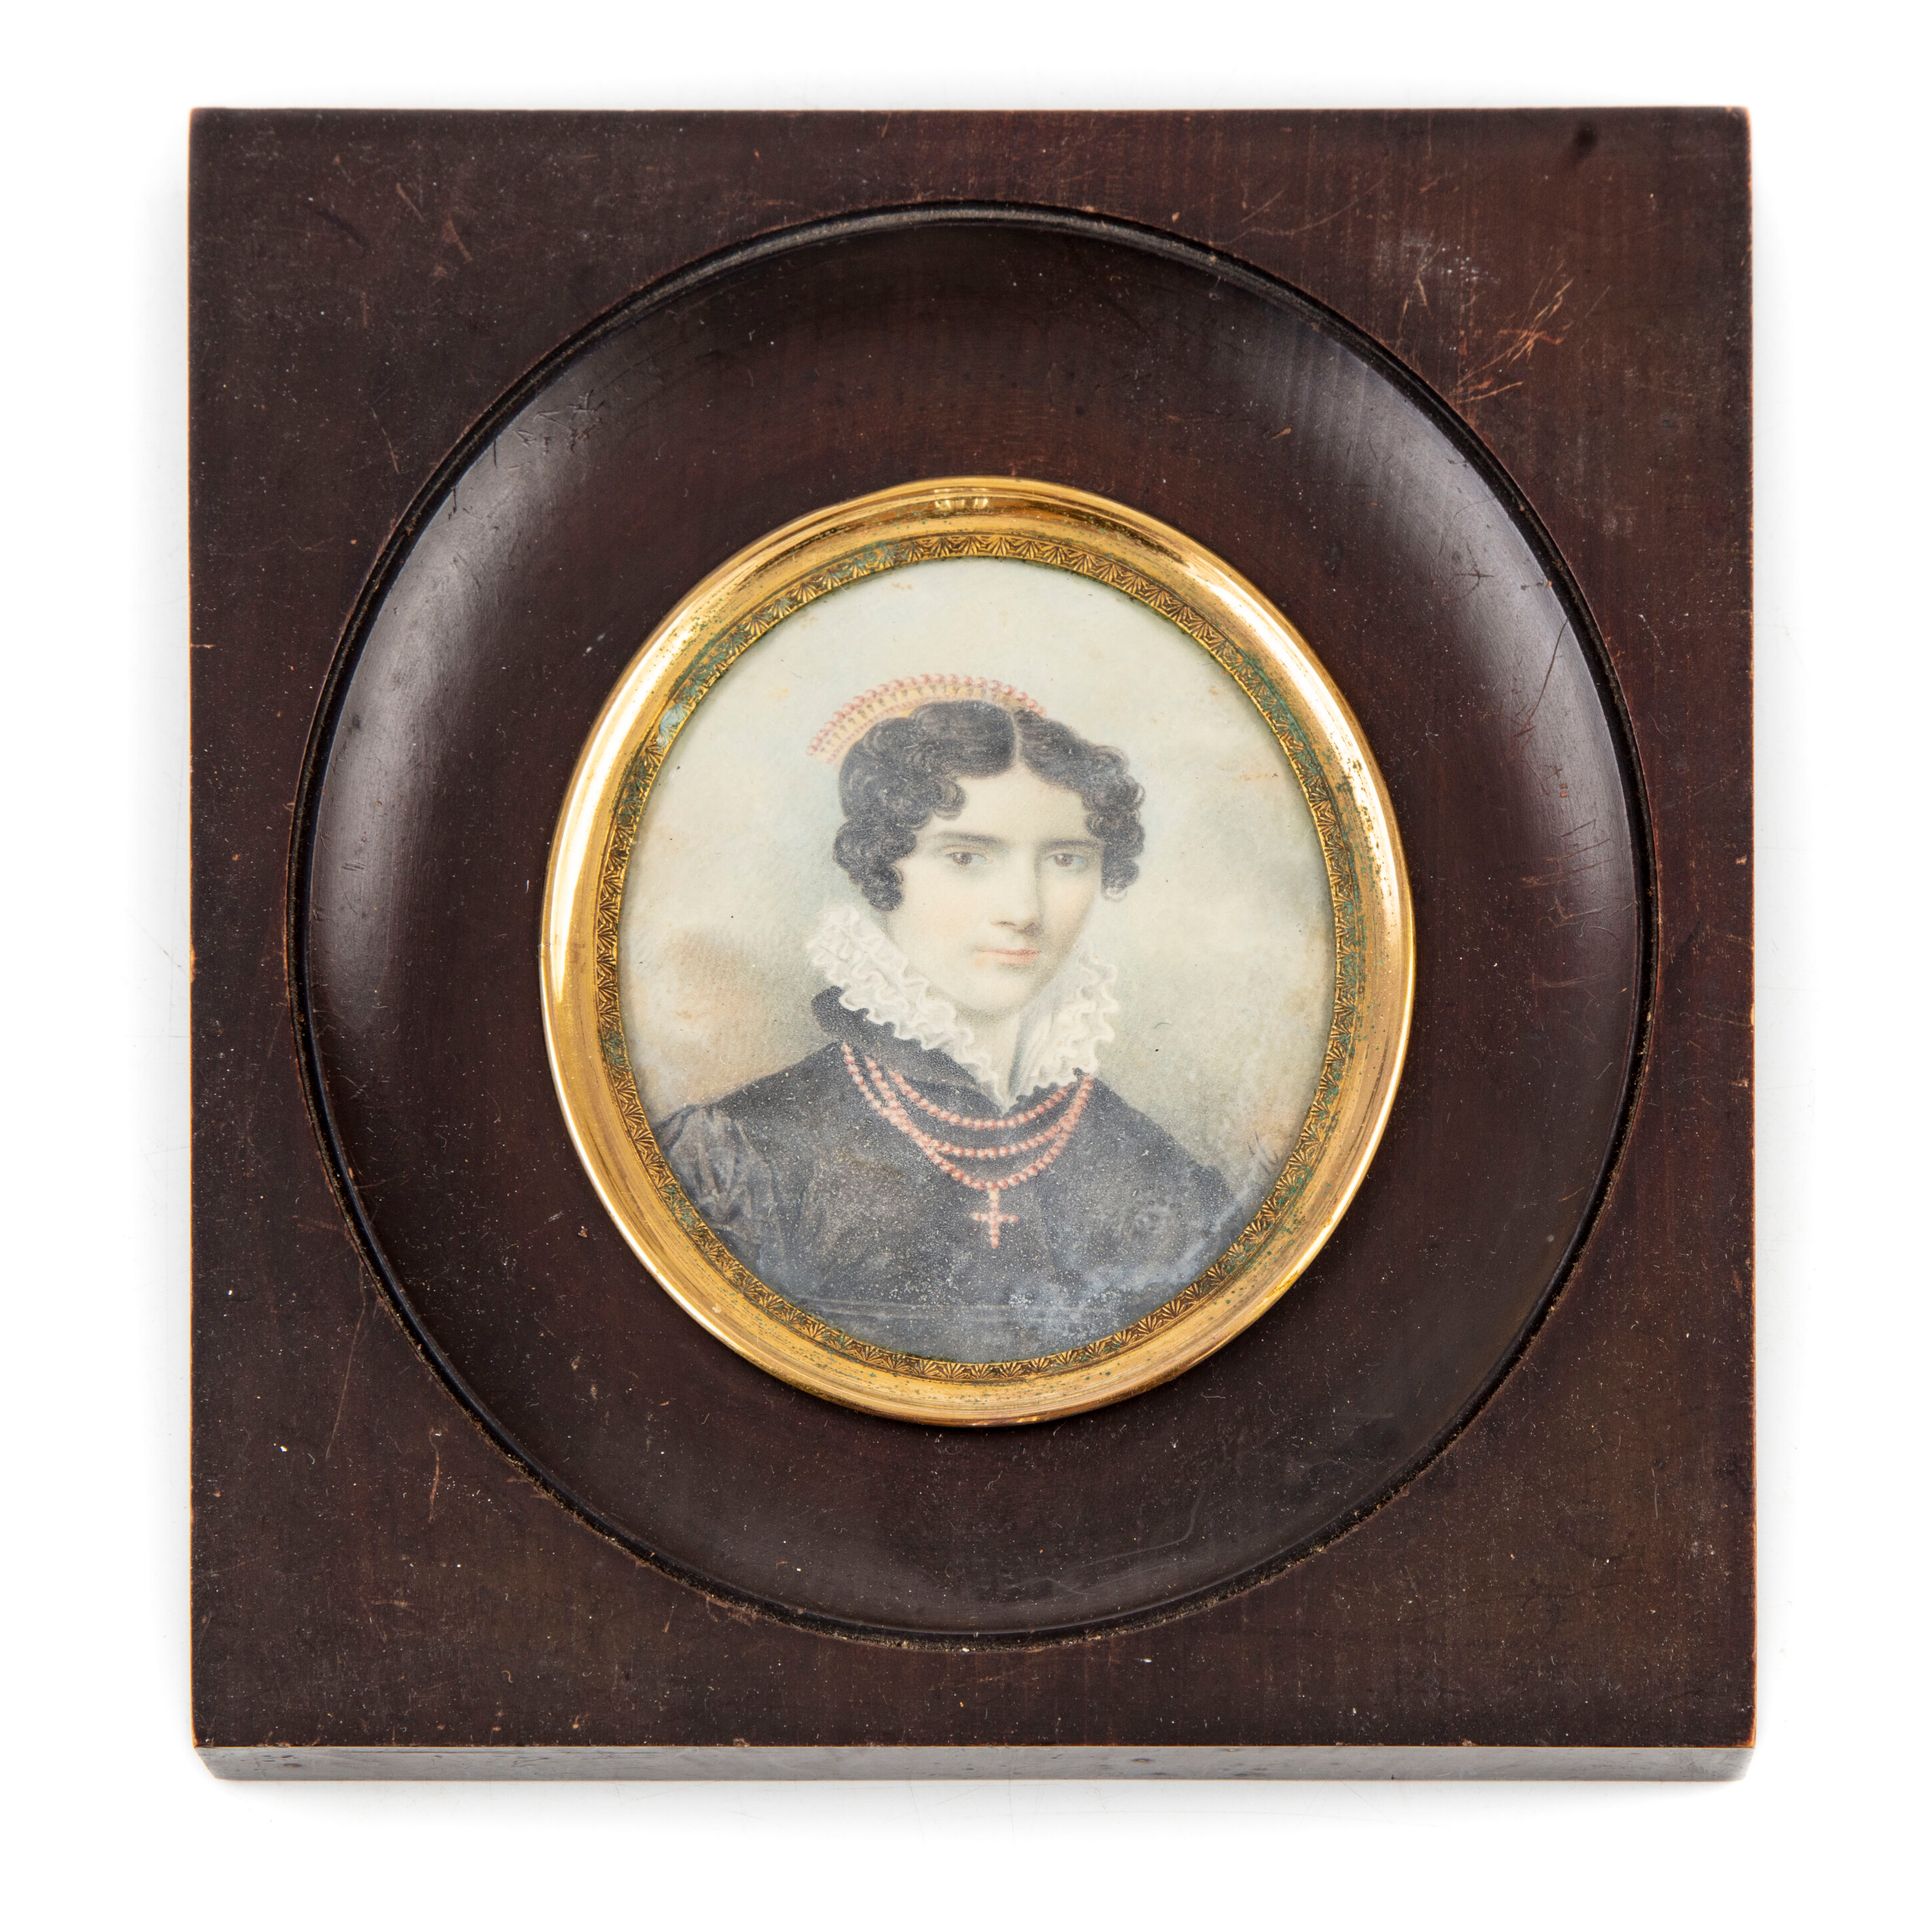 ECOLE FRANCAISE XIXè FRANZÖSISCHE SCHULE um 1820

Porträt einer Frau mit einer H&hellip;